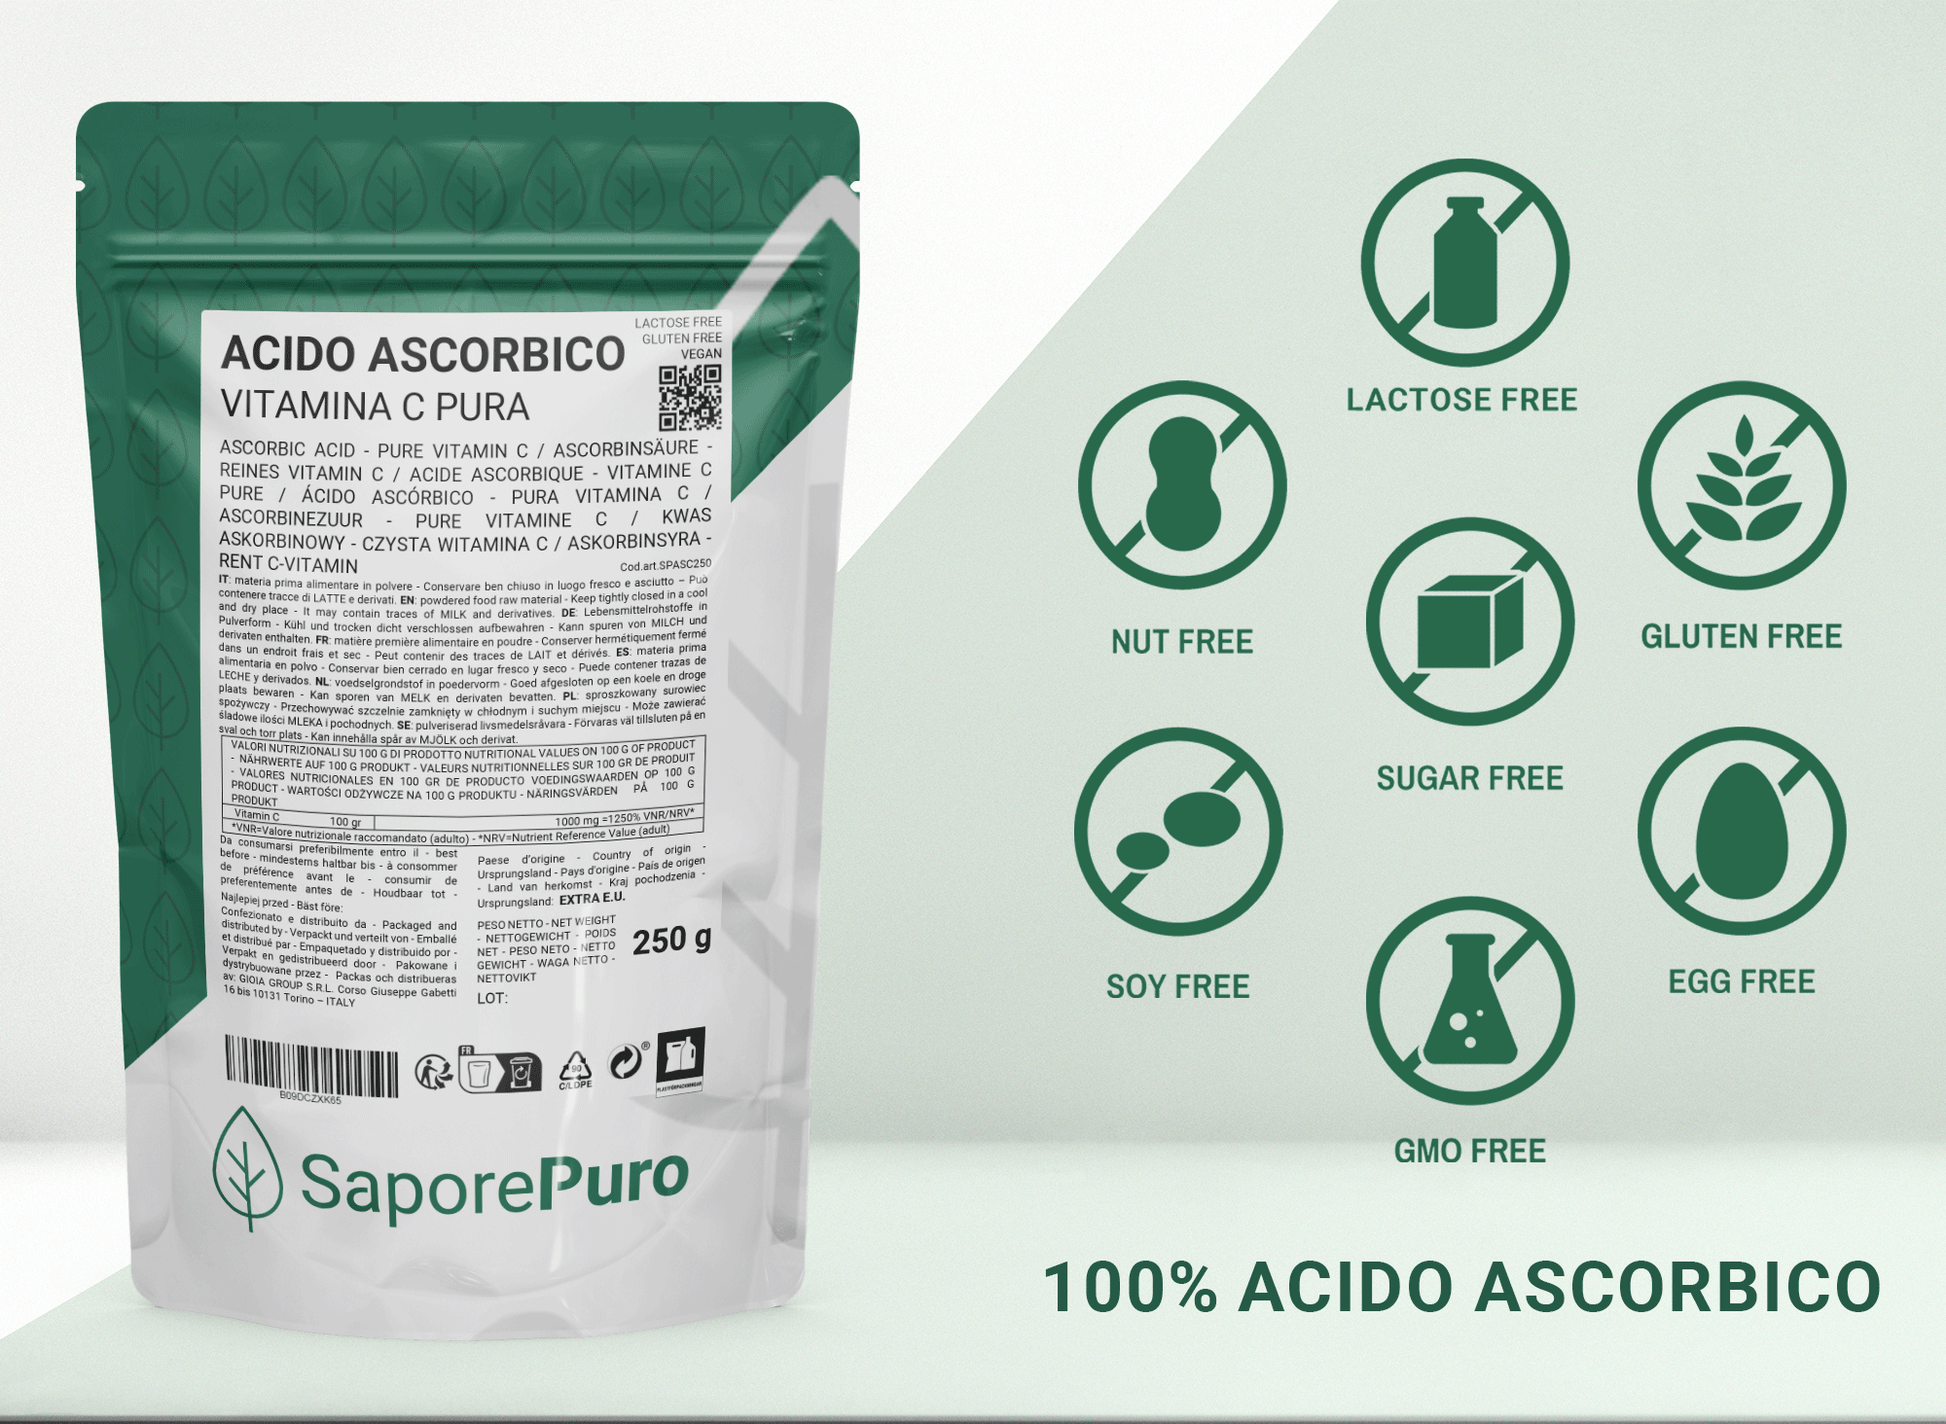 Acido Ascorbico - Vitamina C - (E300) - 1kg - Confezionato in Italia - SaporePuro